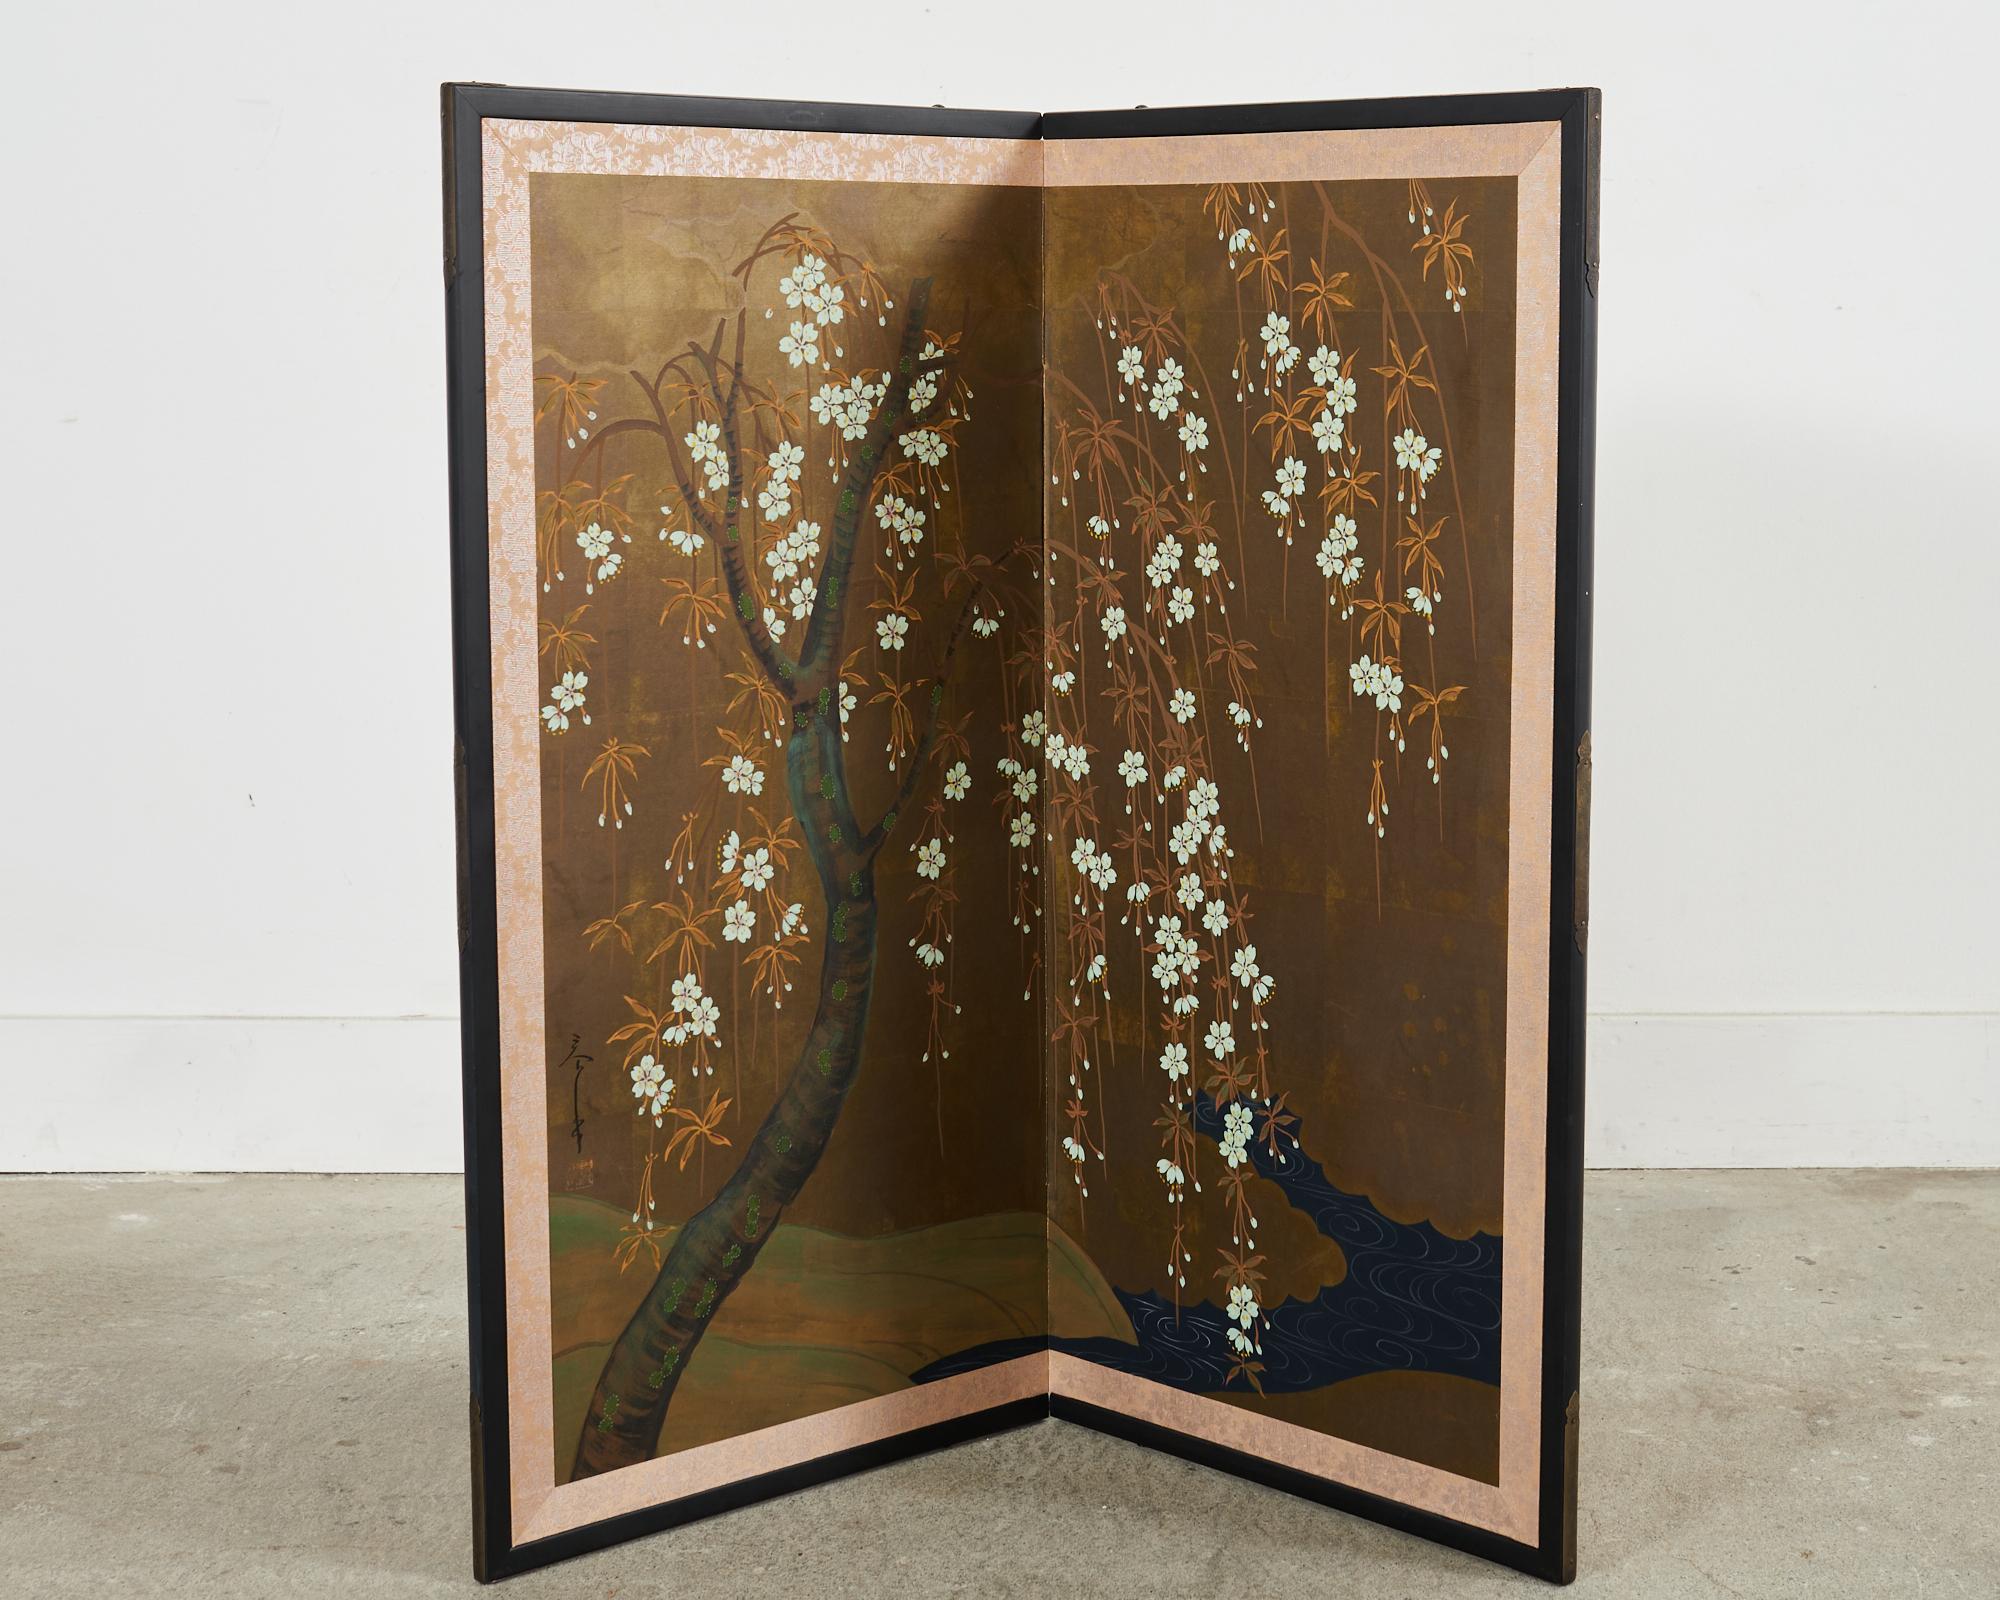 Wunderschöner japanischer Byobu-Bildschirm aus der Showa-Periode des 20. Jahrhunderts mit zwei Tafeln, die einen zart blühenden Kirschbaum (Sakura) an einem sich schlängelnden Fluss oder Bach darstellen. Gemalt mit Tusche und natürlichen